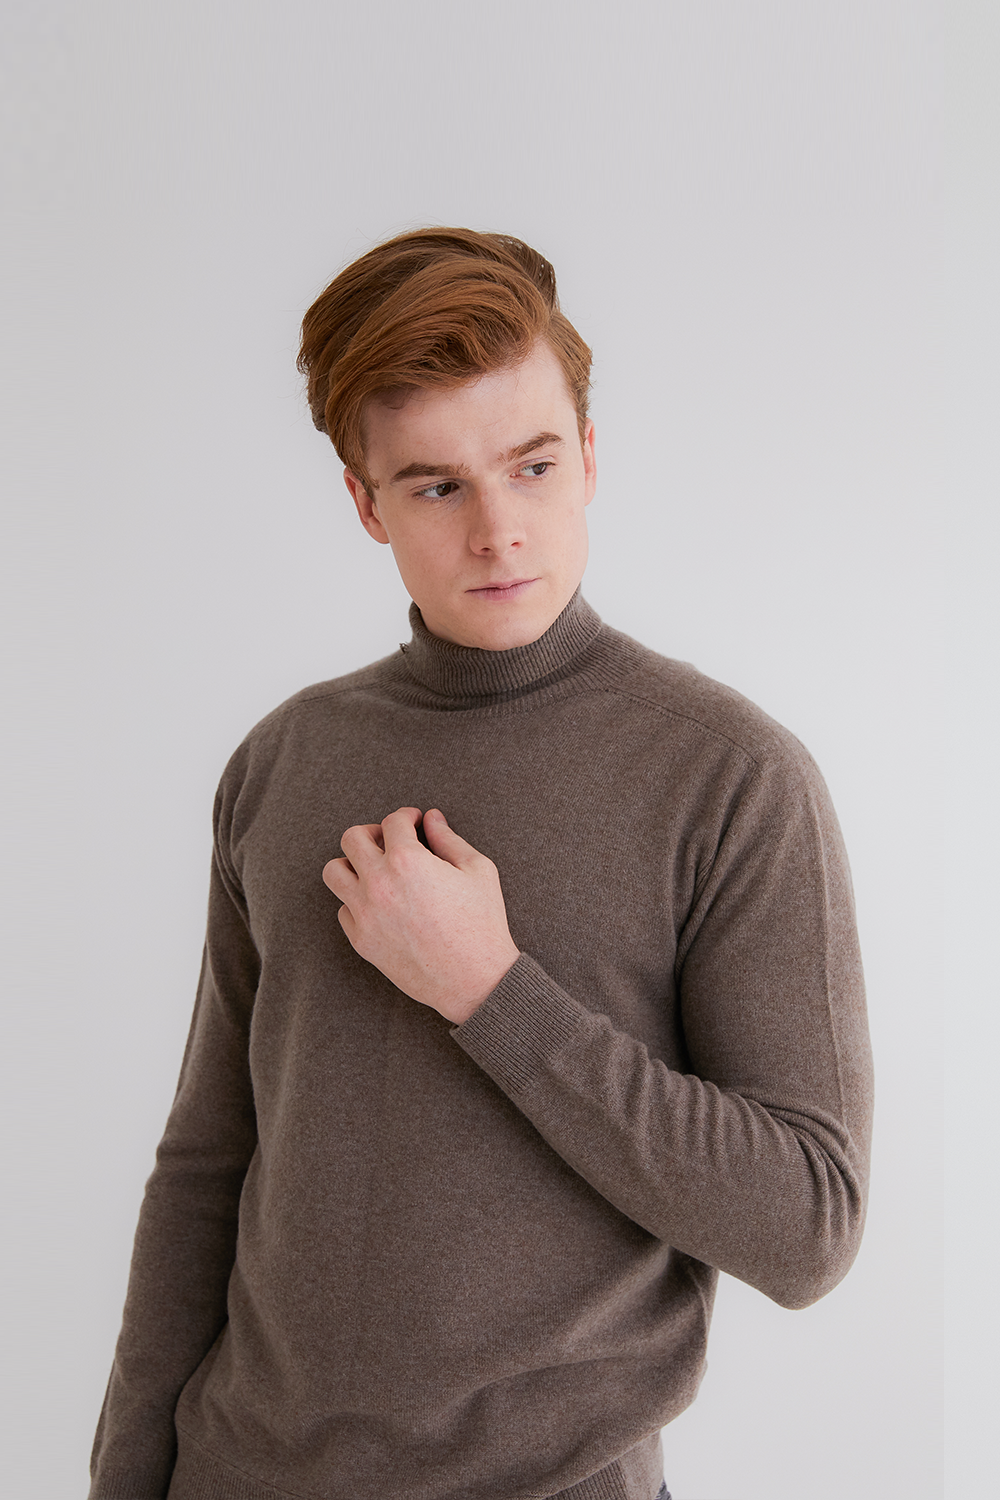 프리미엄 캐시미어 100 남성 스웨터 [Pure cashmere100 turtleneck sweater by whole-garment knitting - Warm brown]